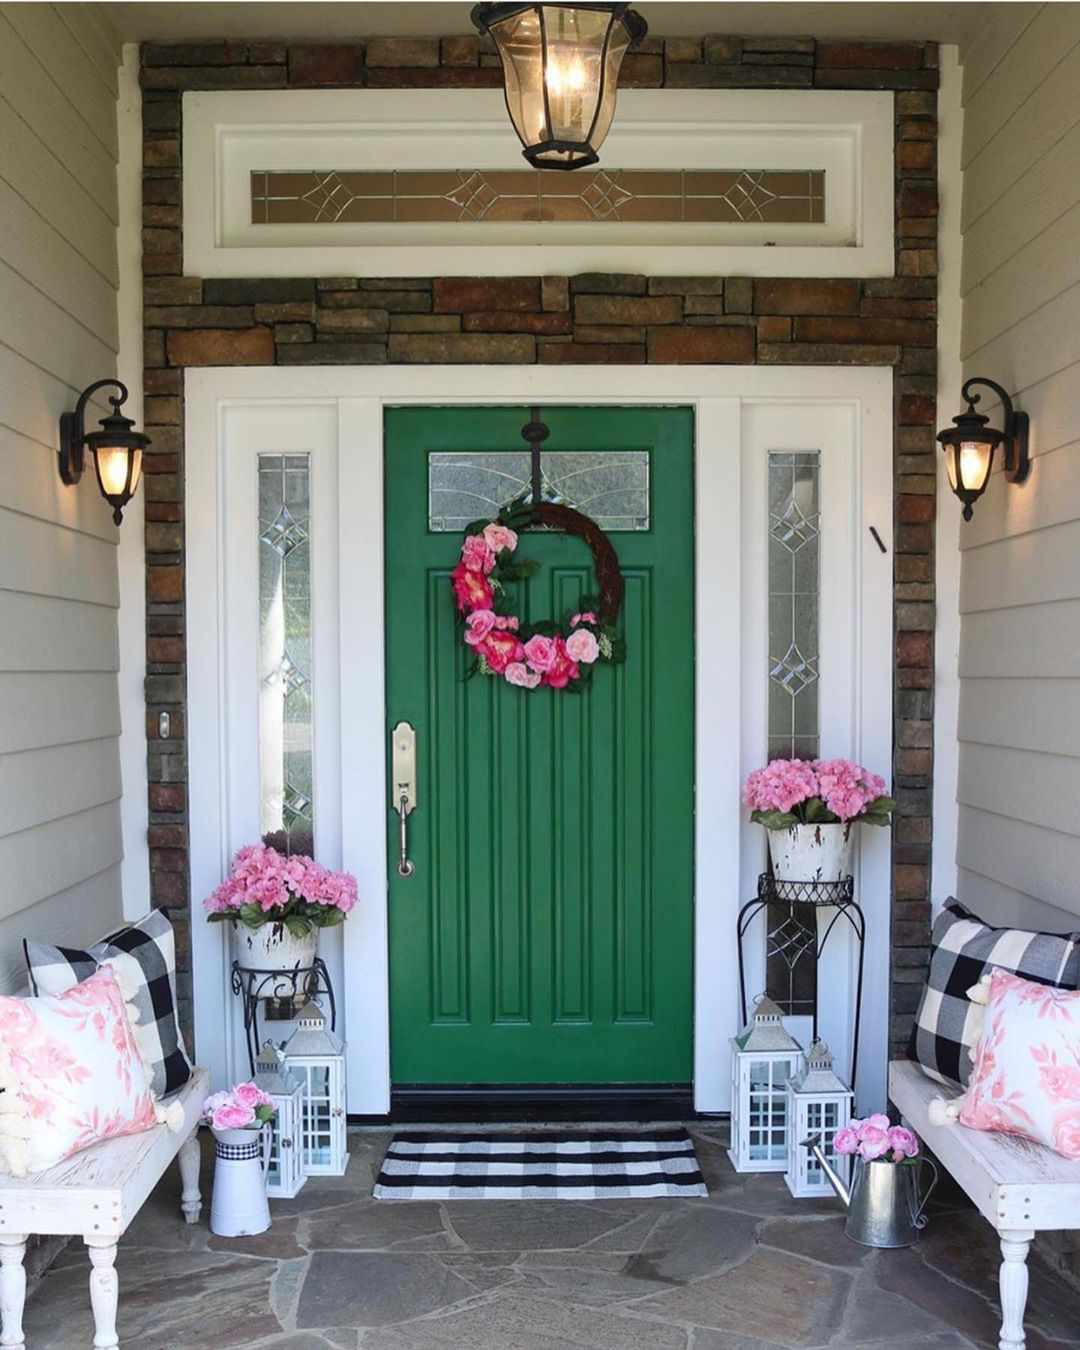 Eine kellygrüne, mit rosa Blumen verzierte Haustür